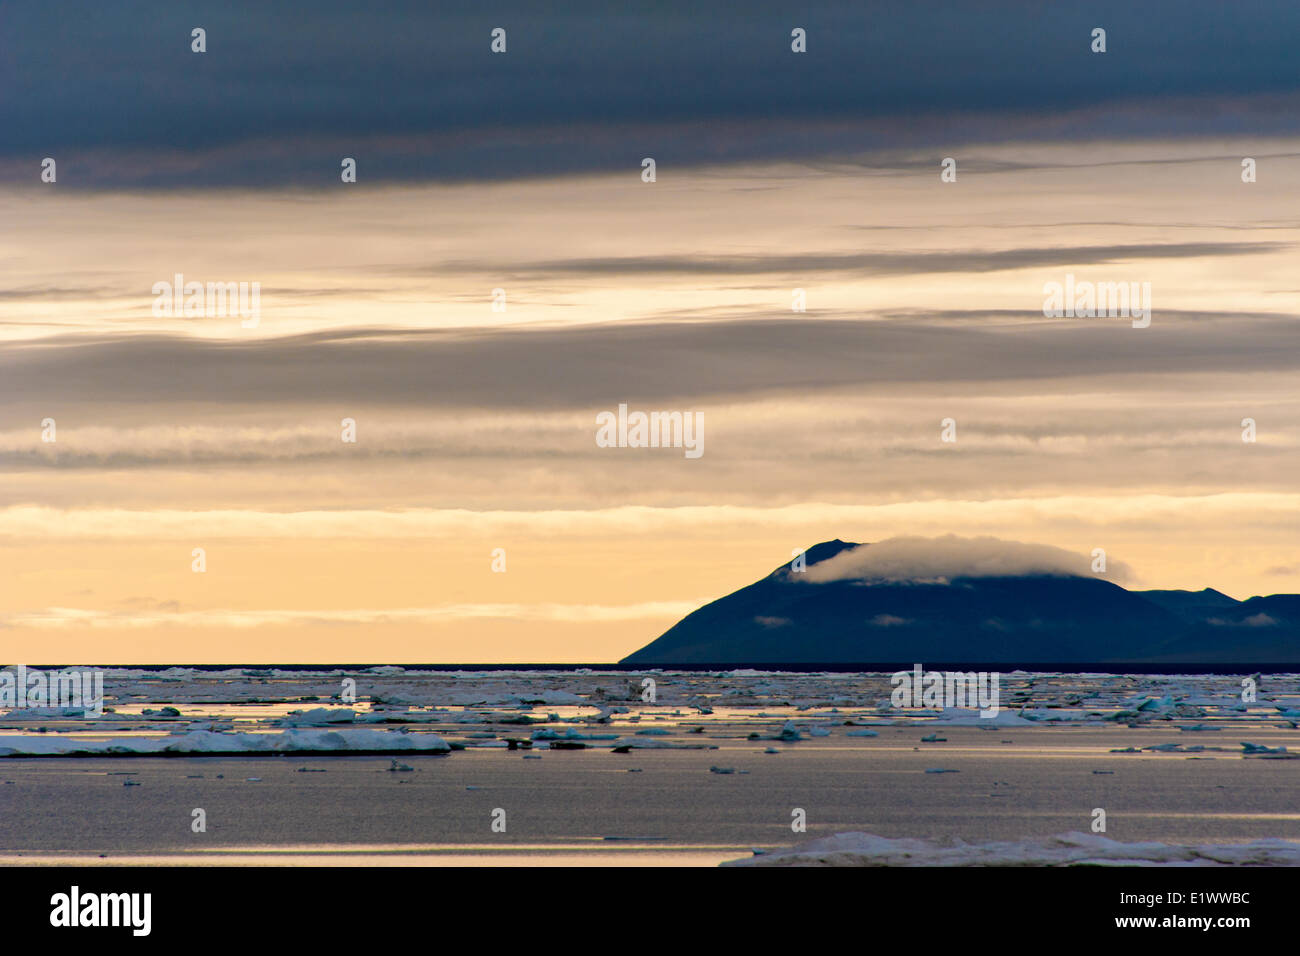 L'île Wrangel, en Russie arctique Banque D'Images